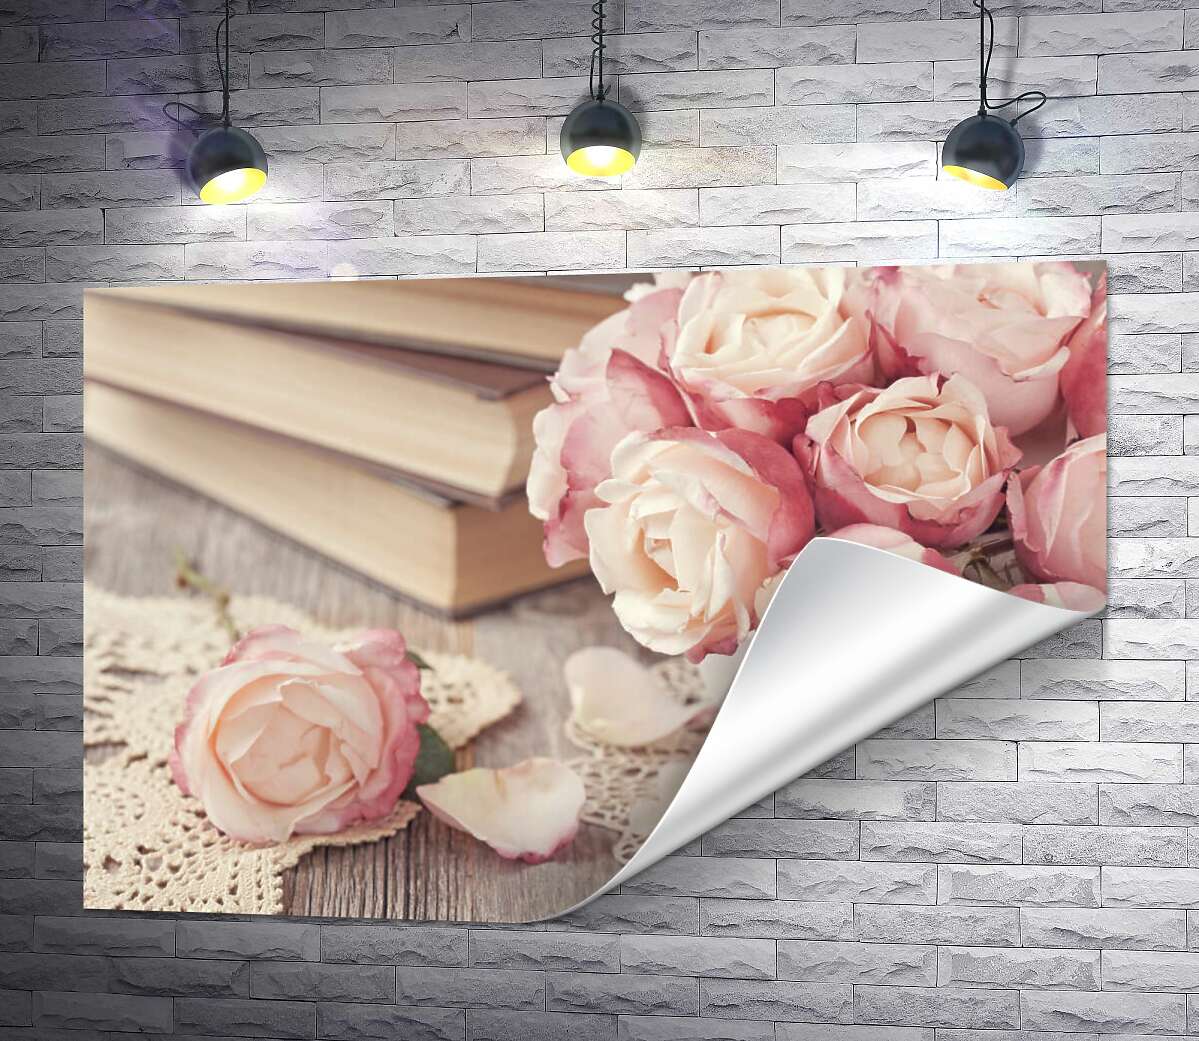 друк Маленька вазочка троянд прикрашає стіл із книгами